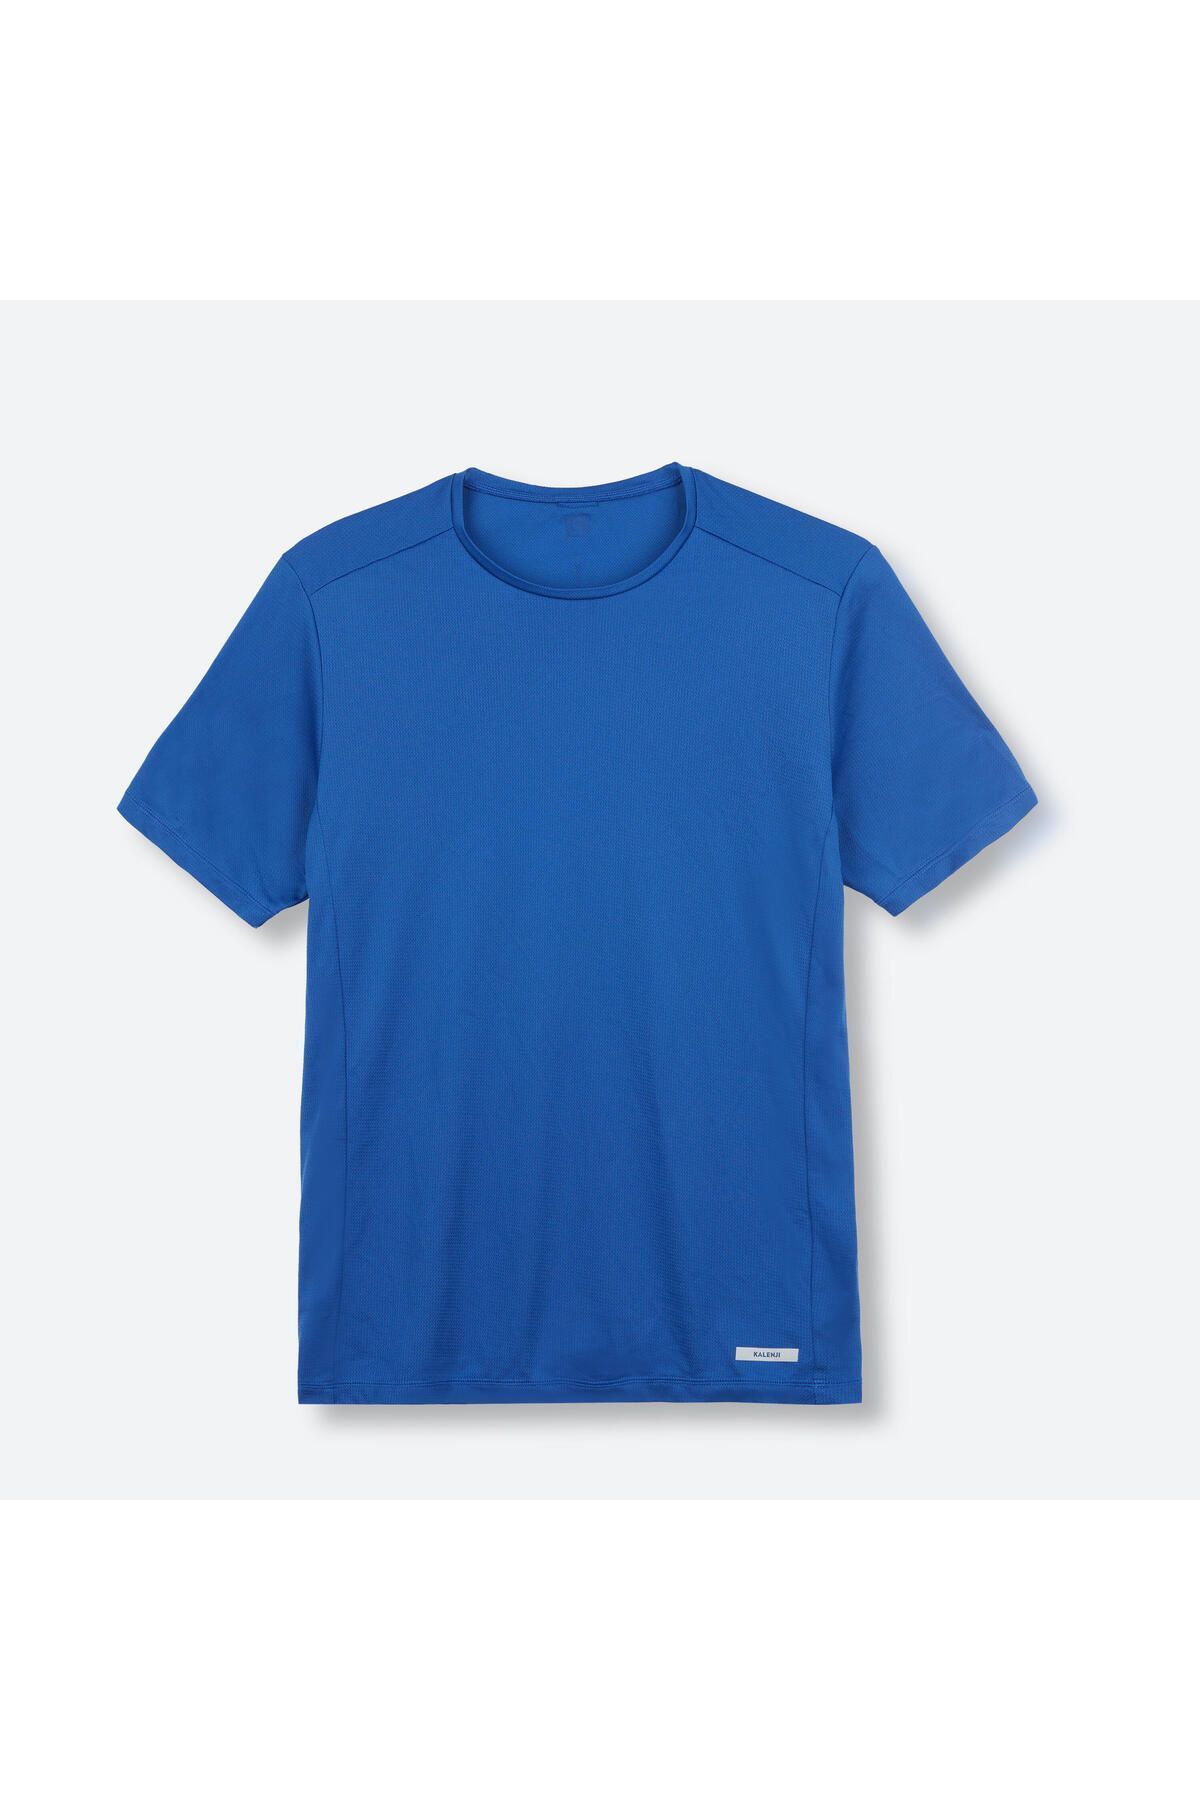 Decathlon Erkek Koşu Tişörtü - Mavi - Dry